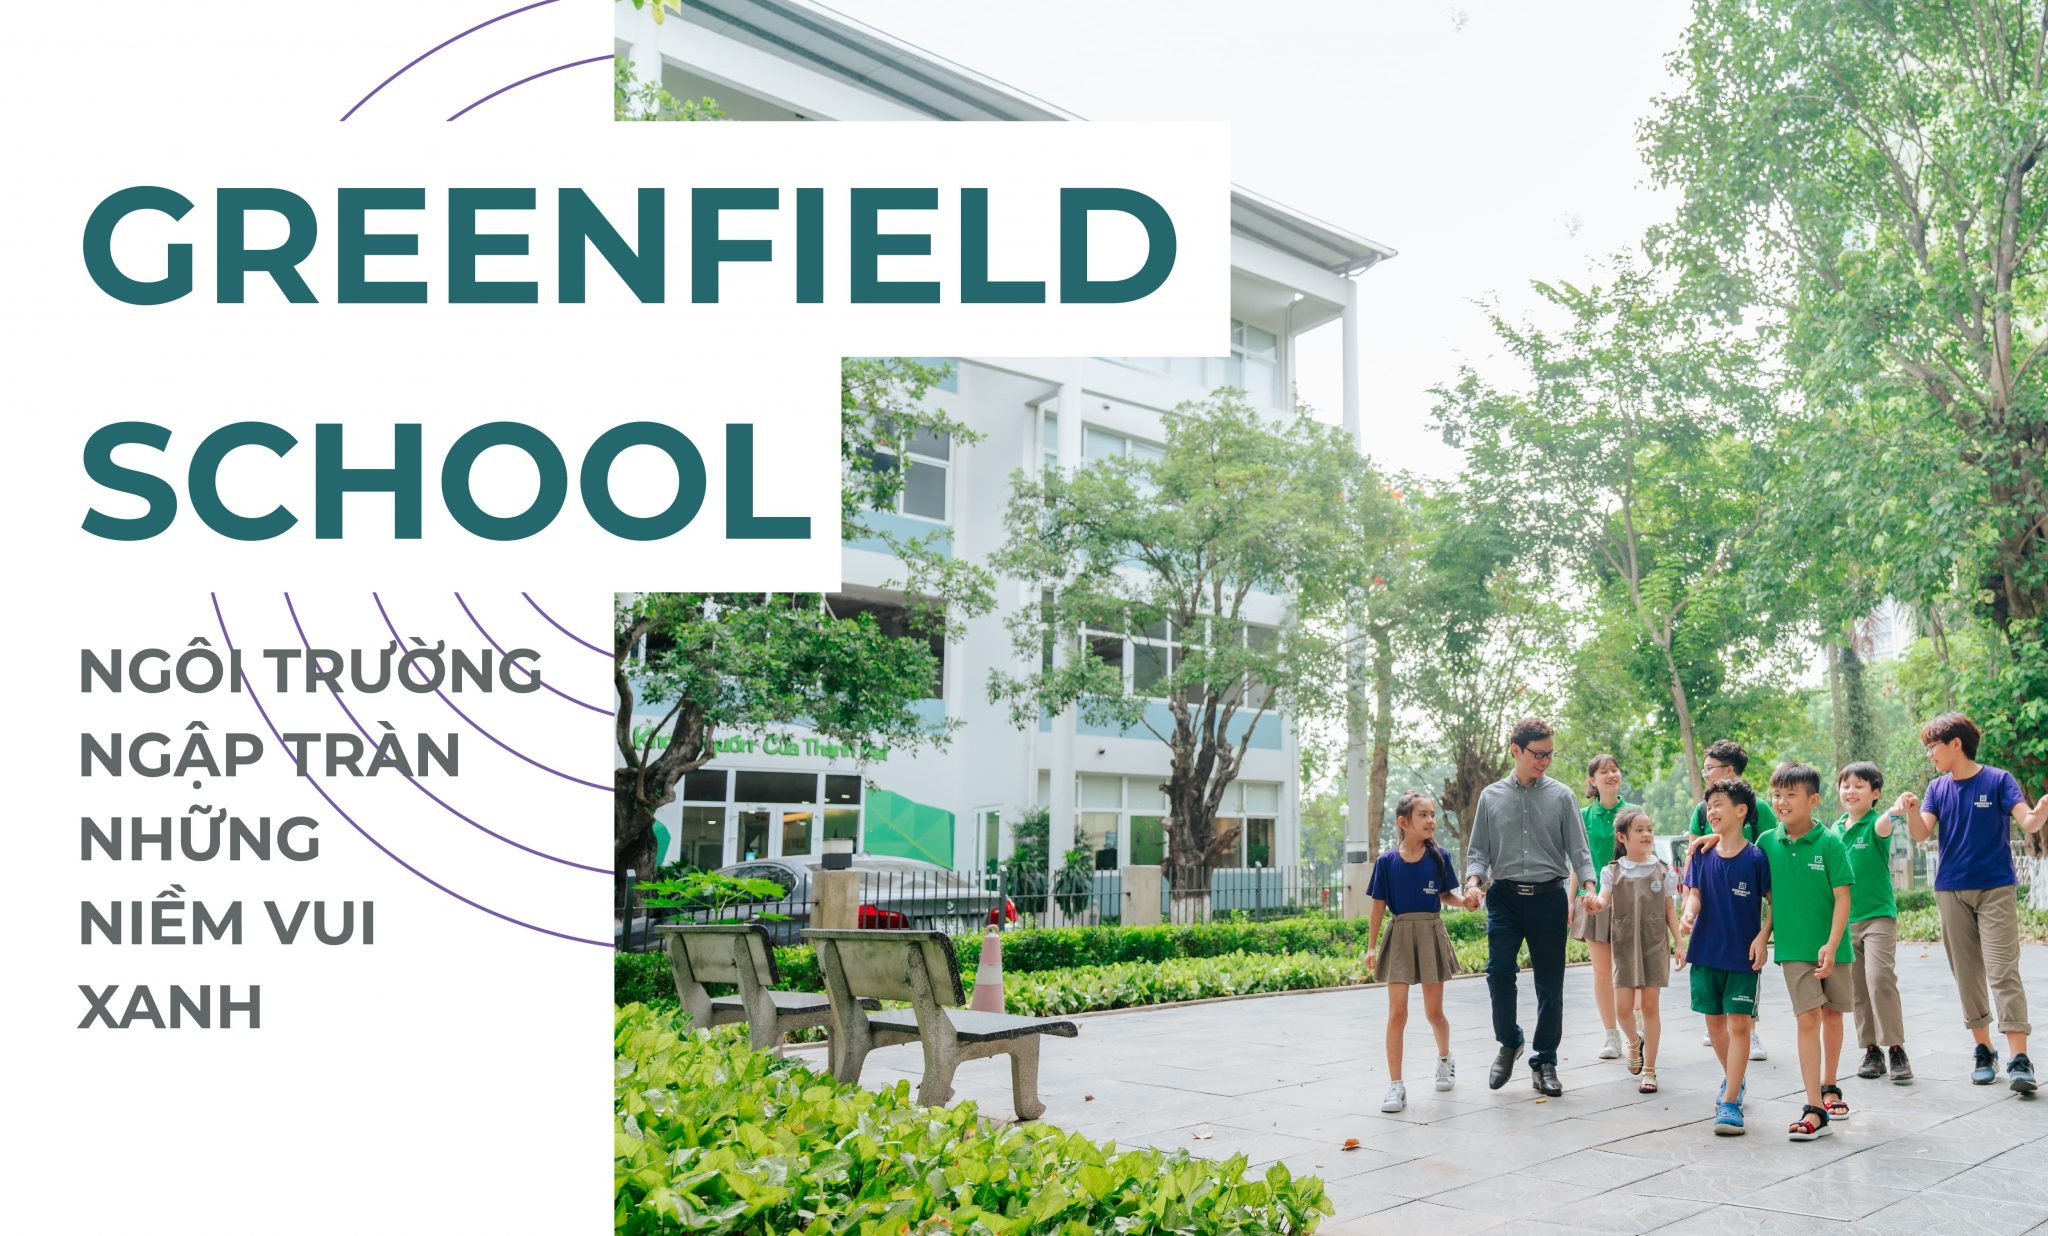 Greenfield School – Ngôi trường ngập tràn những niềm vui xanh